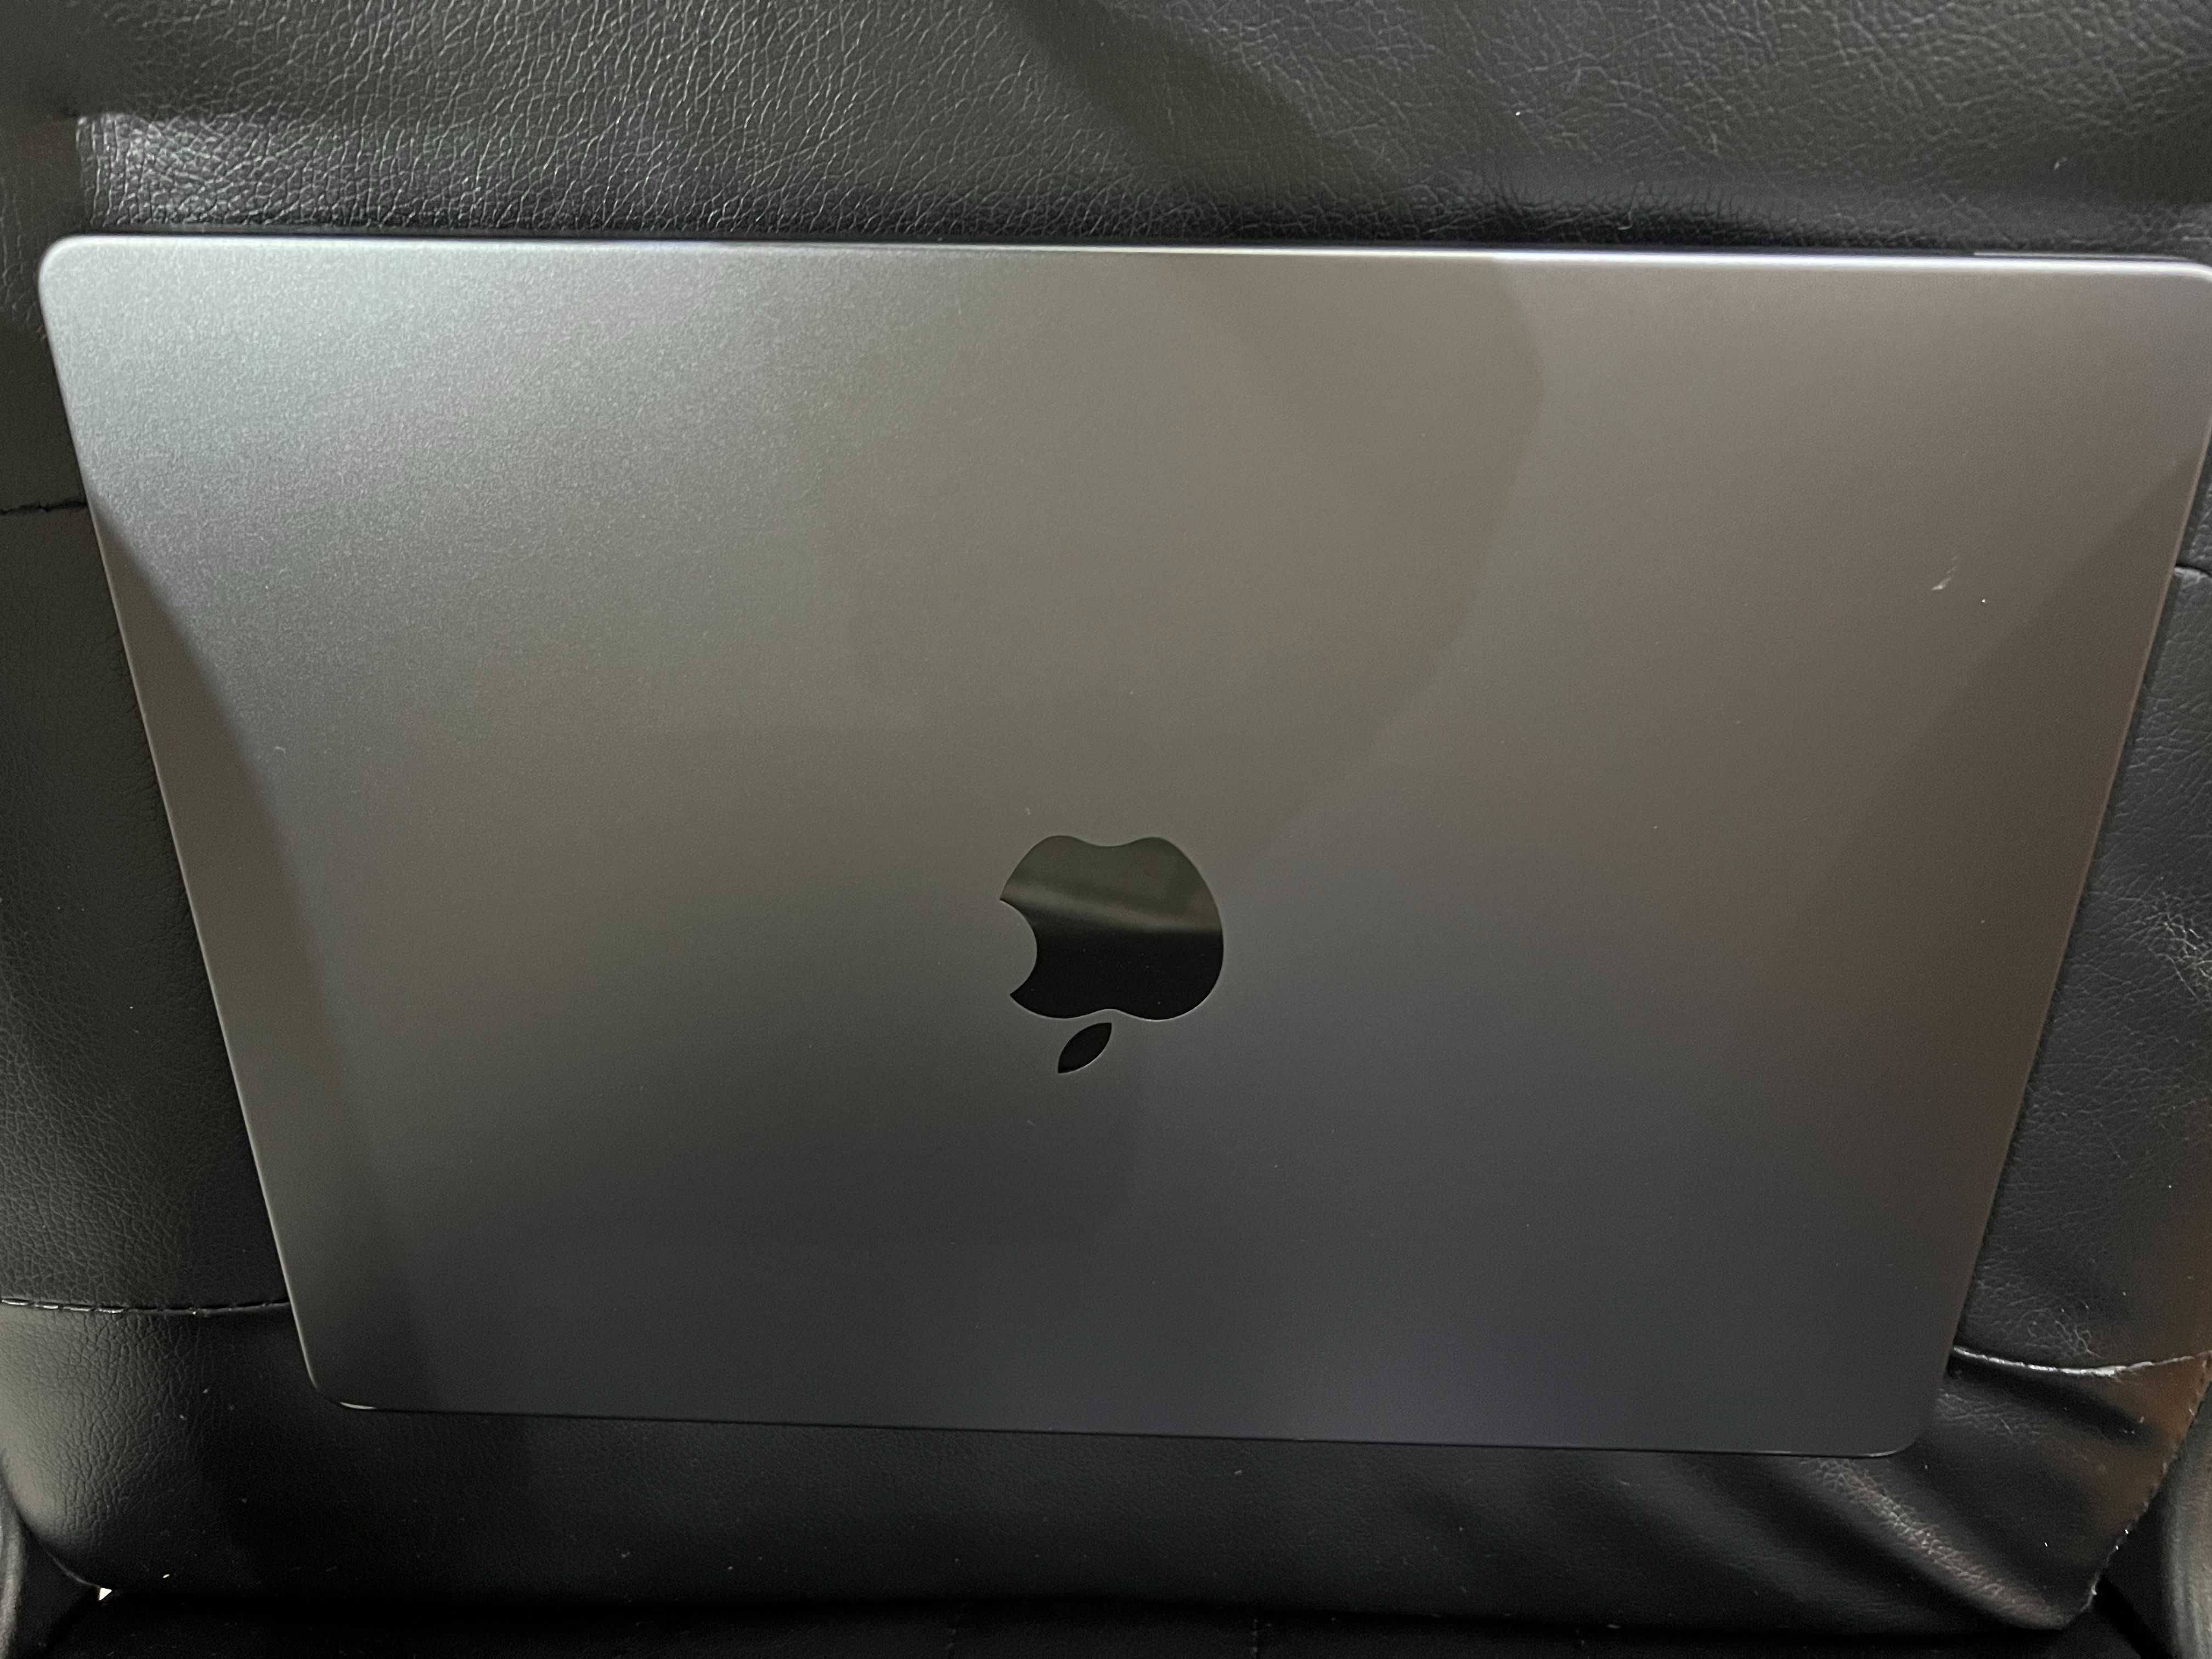 APlle Macbook M3 Pro - 512 GB - 18 GB - Garantie - nou.